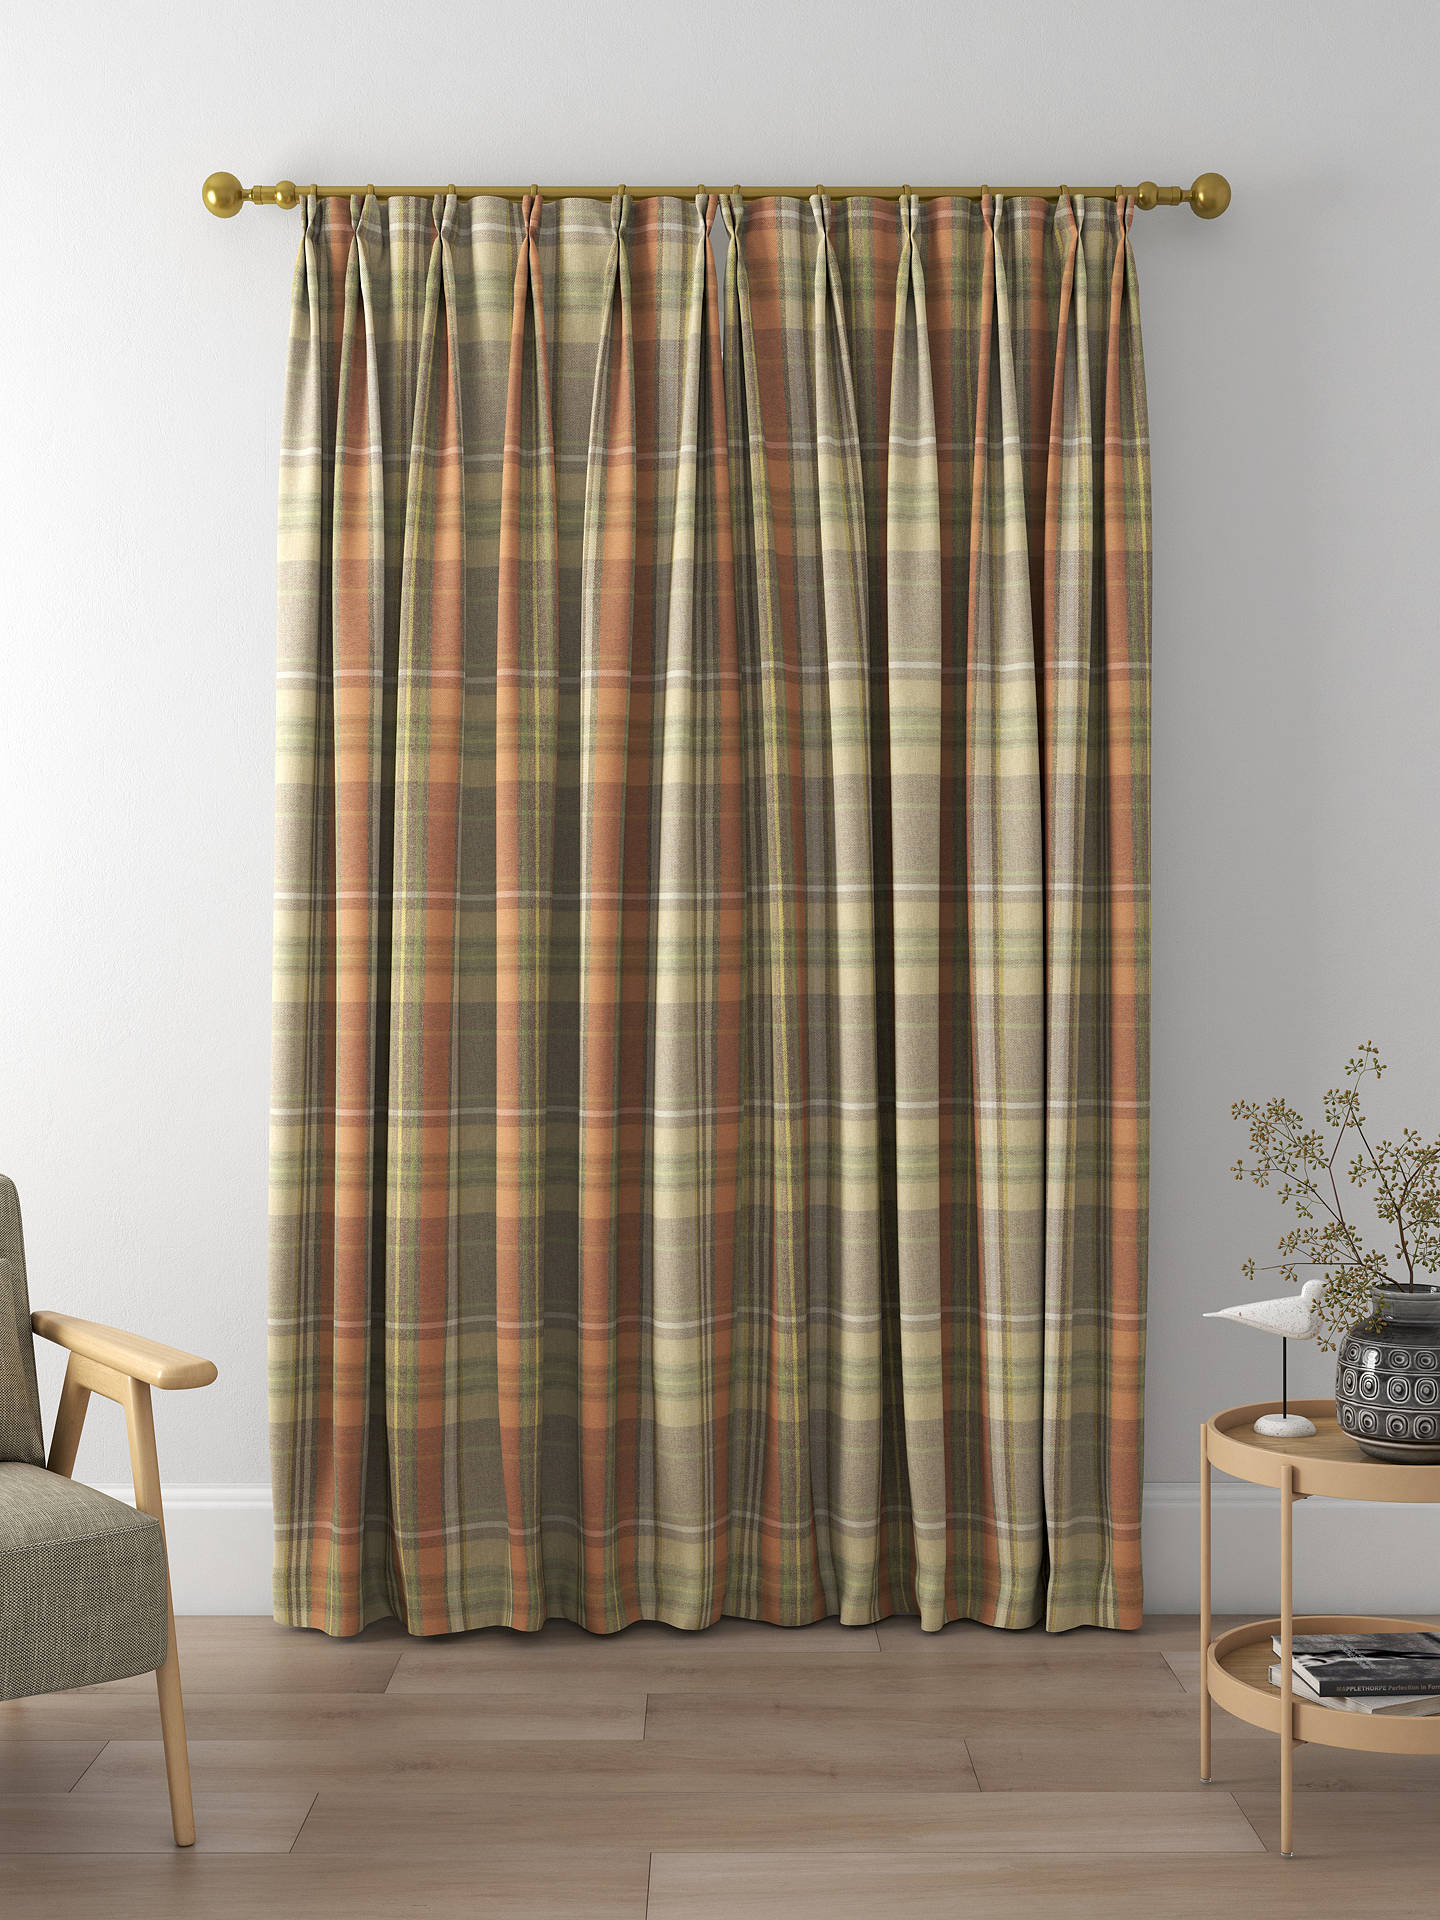 Prestigious Textiles Strathmore Made to Measure Curtains, Auburn